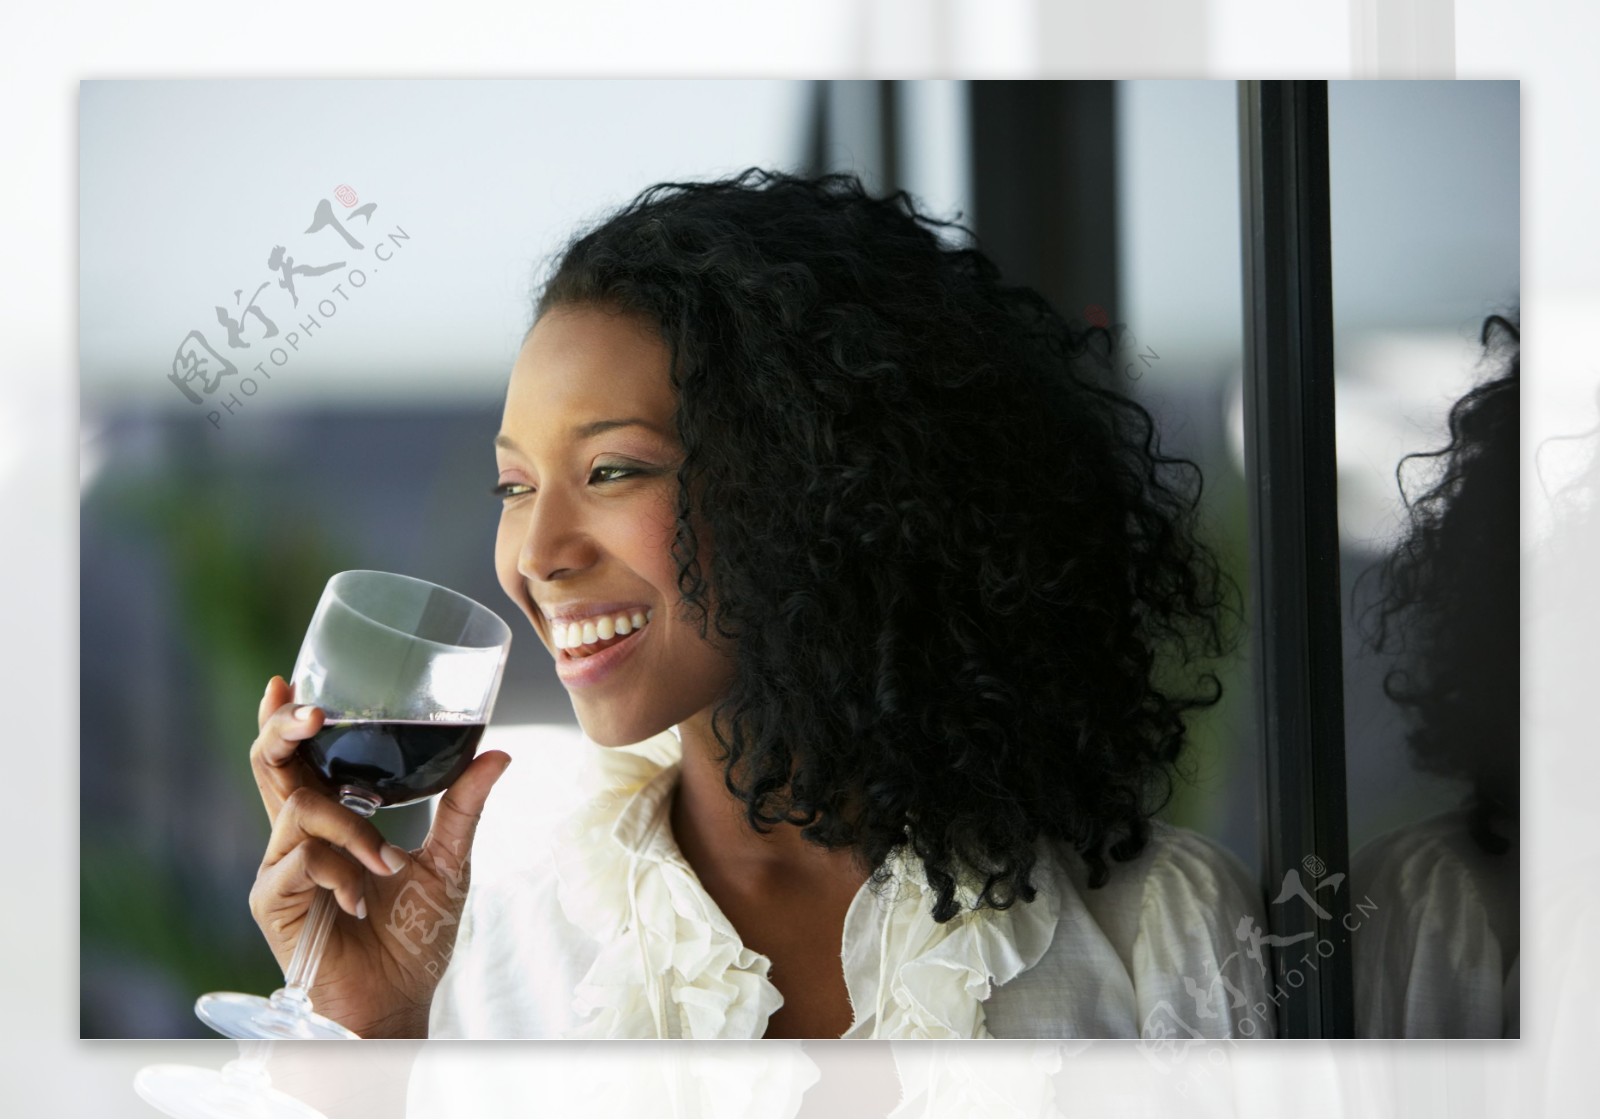 喝红酒的黑人美女图片